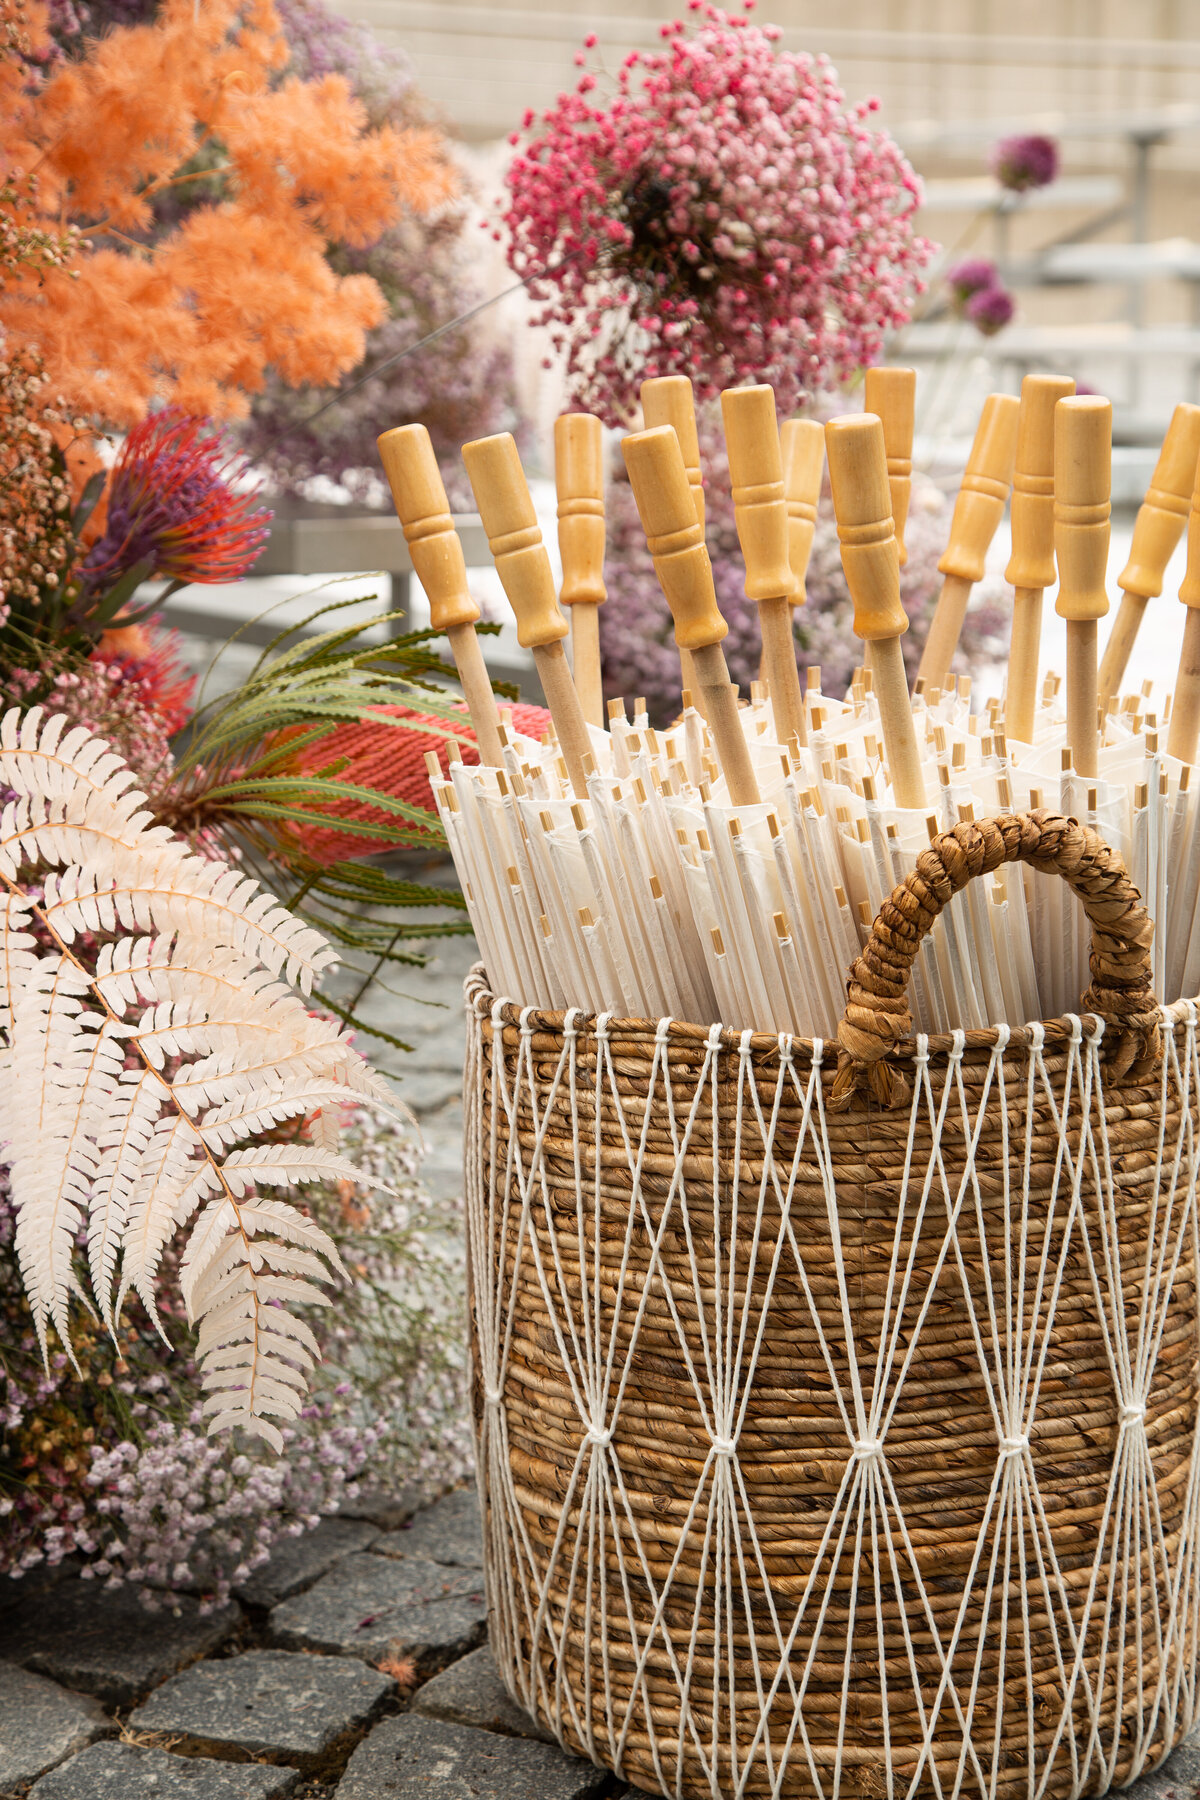 Basket of umbrellas and floral details at estate wedding